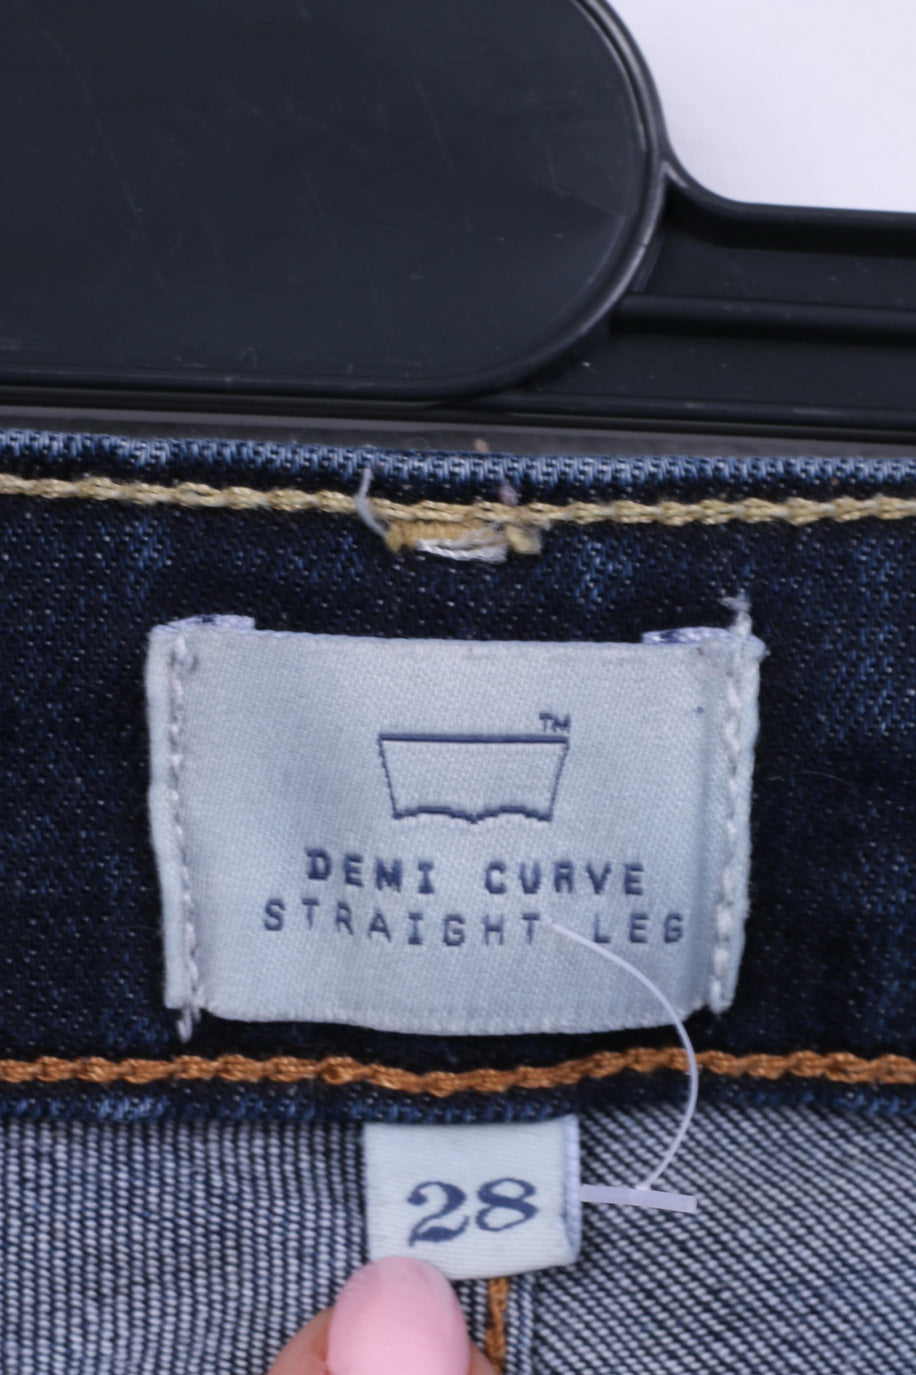 Levis San Francisco Womens 28 Trousers Denim Jeans Navy Denim Curve Straight Leg Cotton